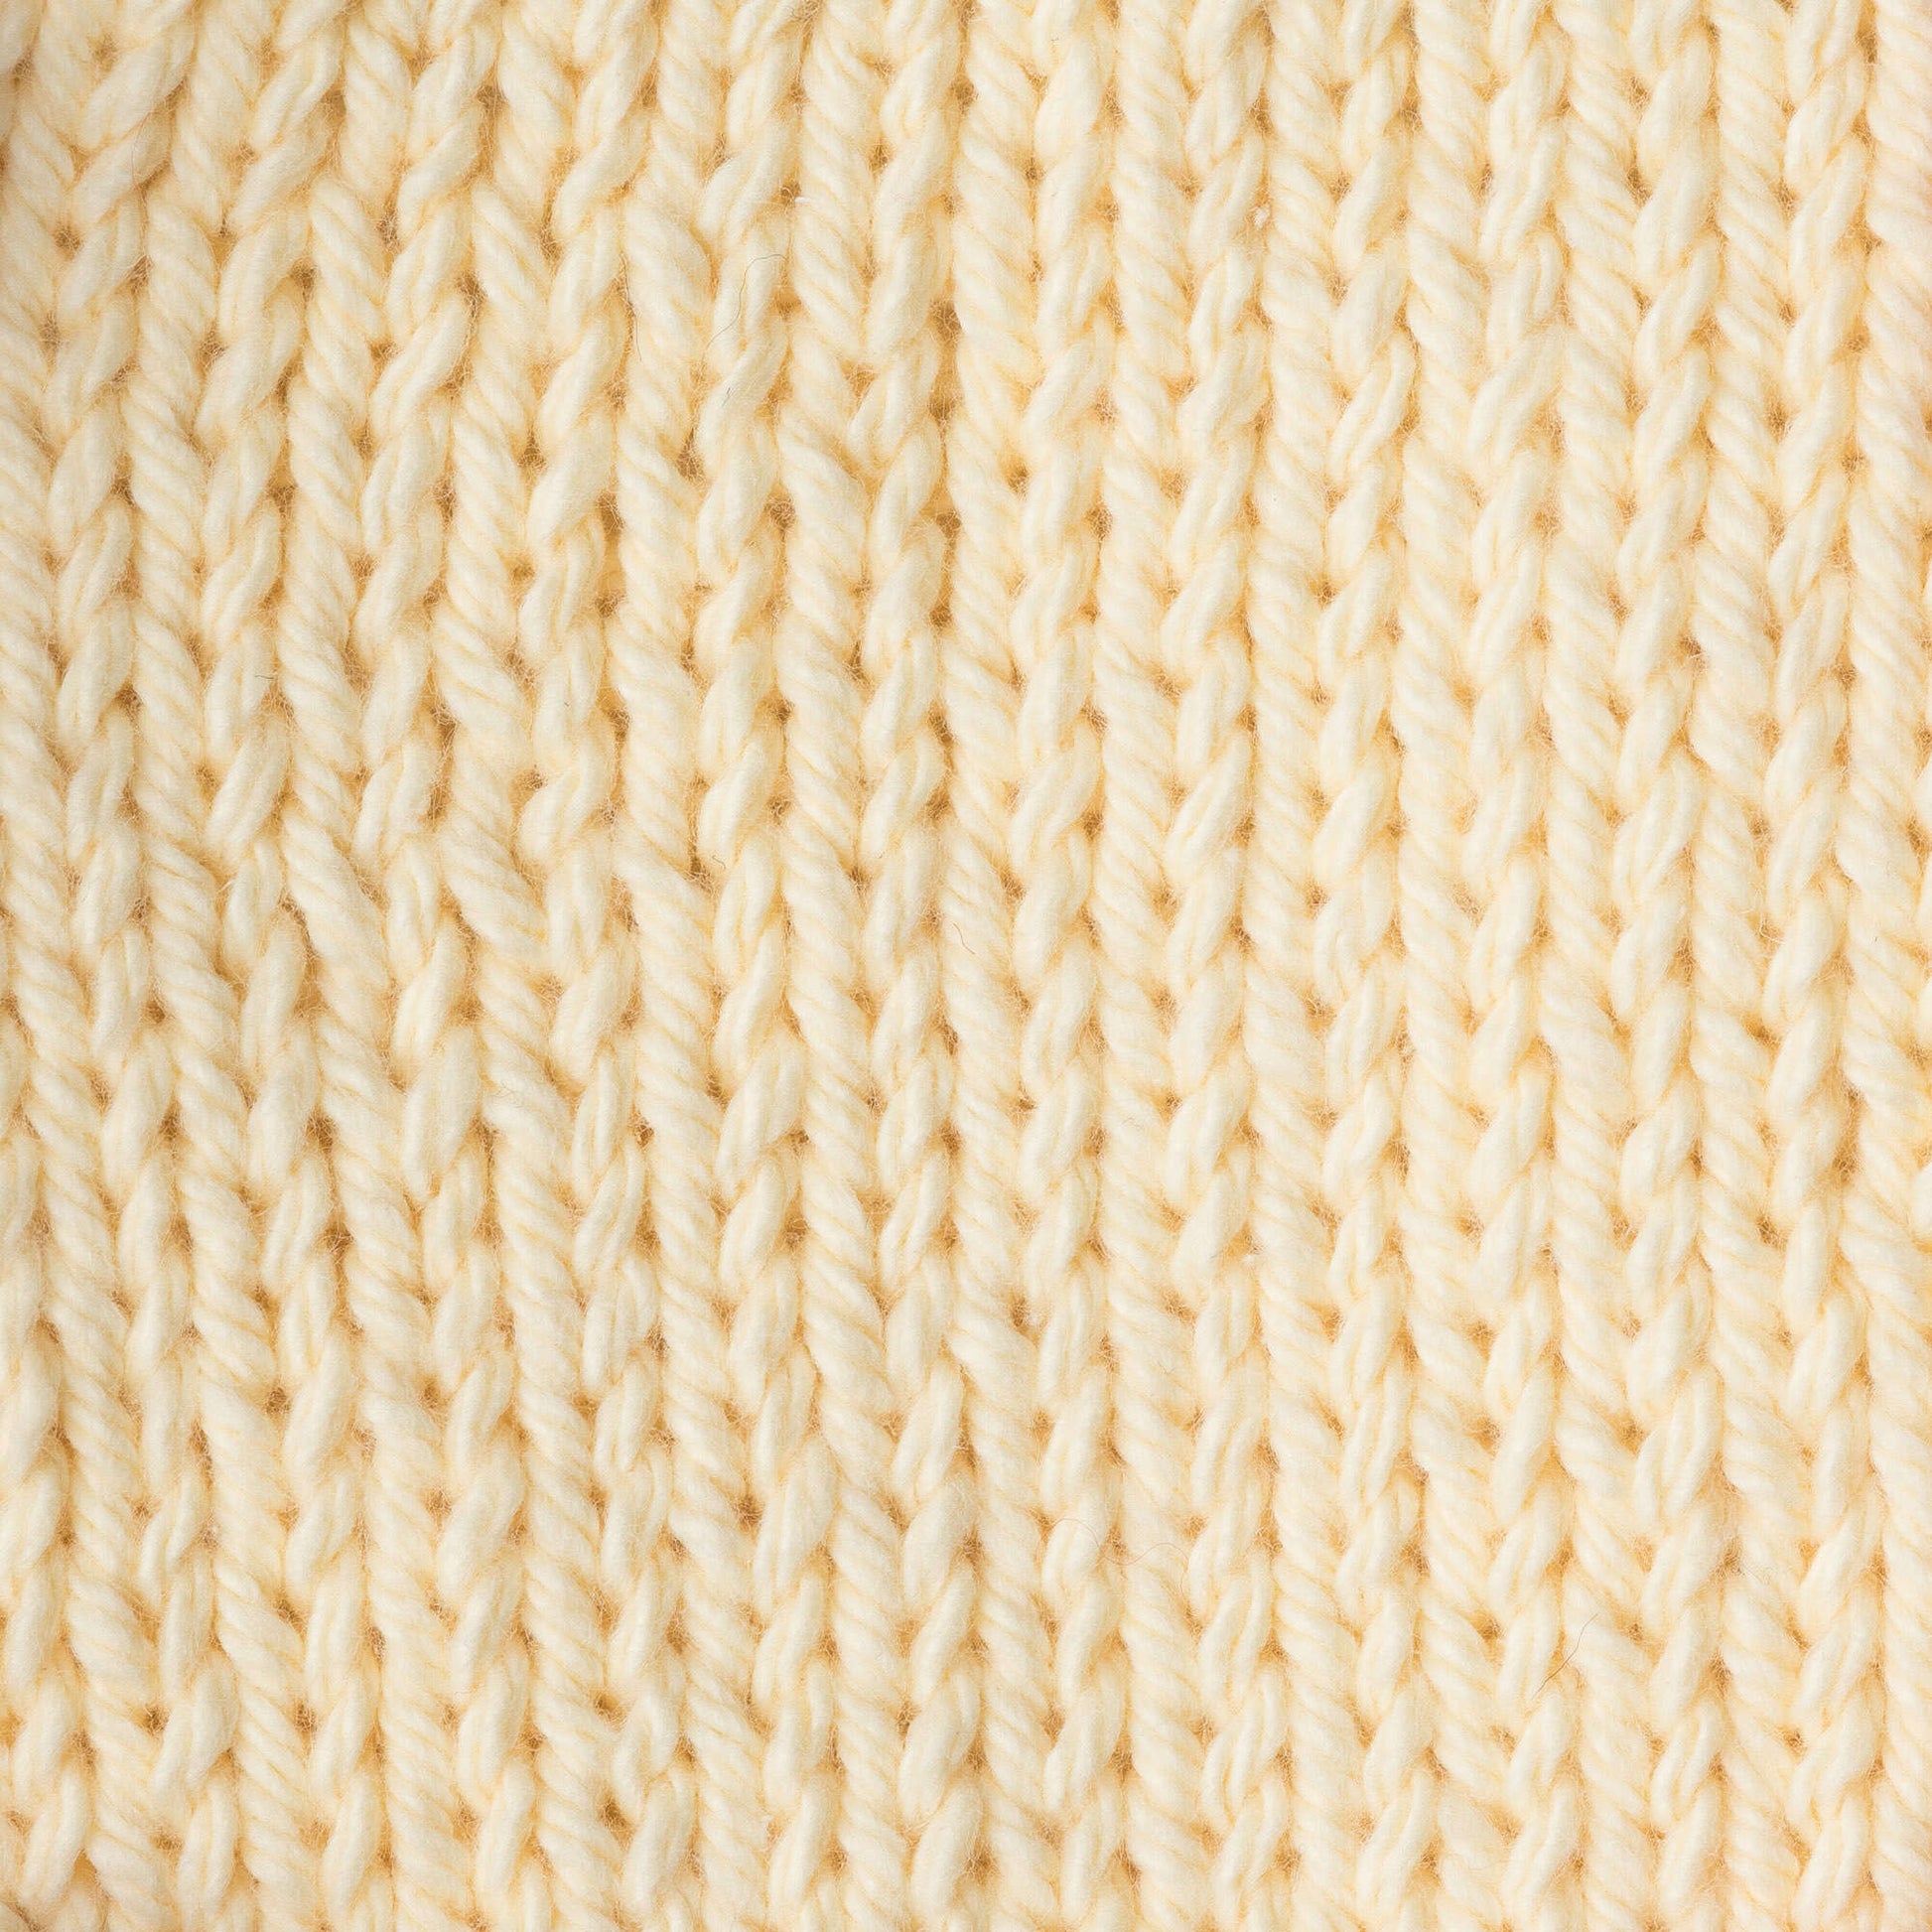 Bernat Handicrafter Cotton Yarn Pale Yellow